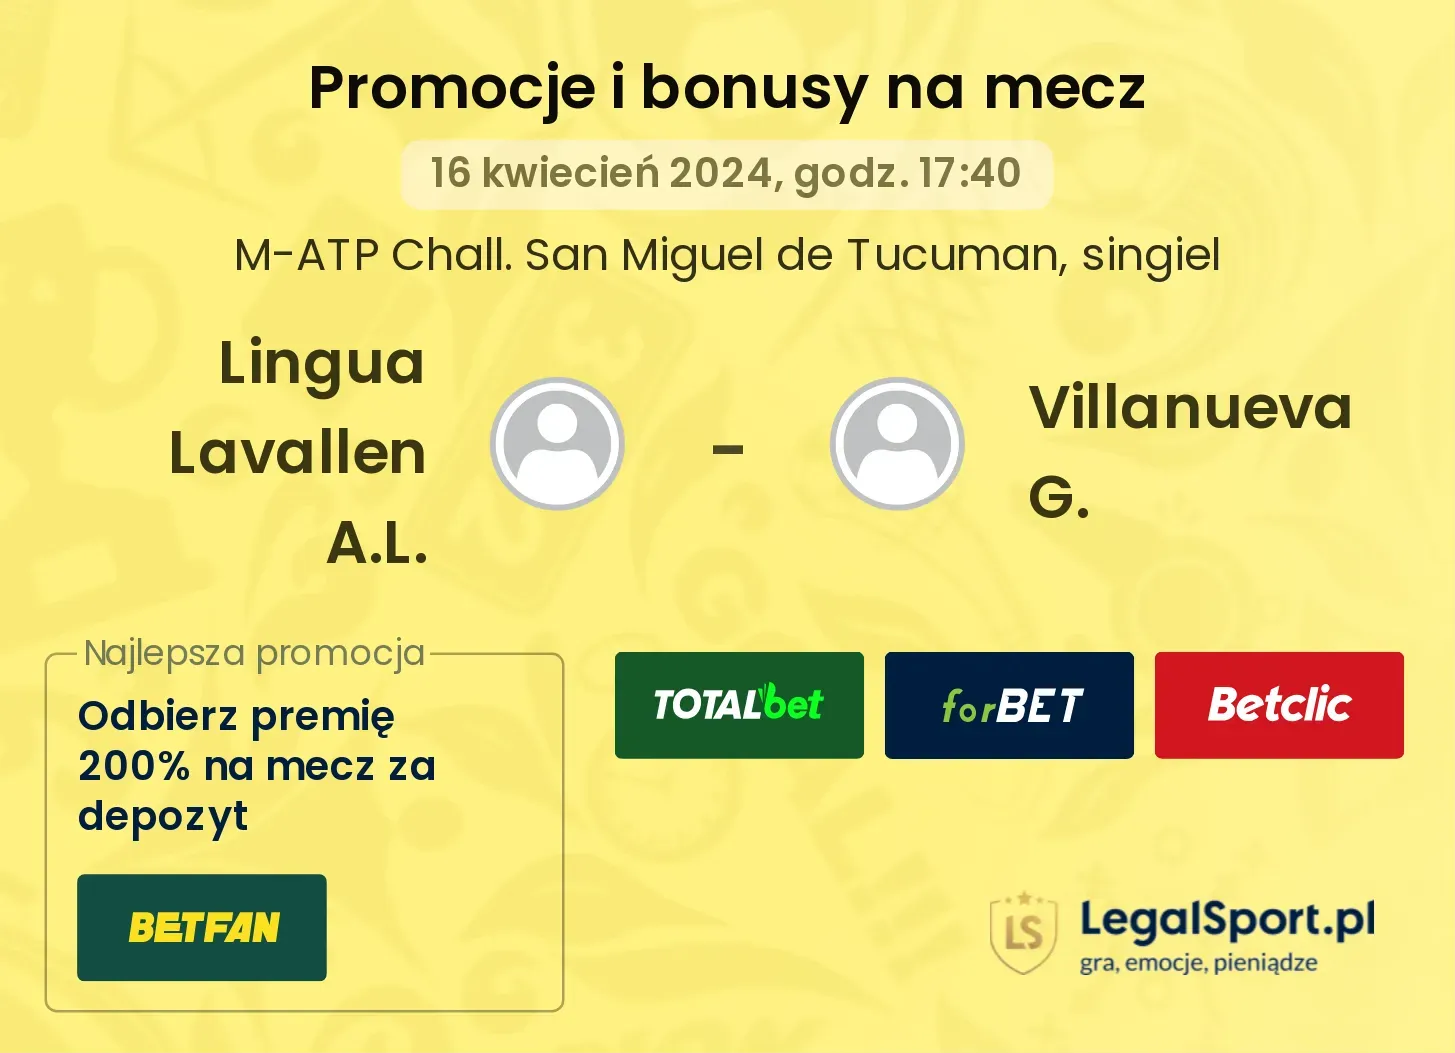 Lingua Lavallen A.L. - Villanueva G. promocje bonusy na mecz